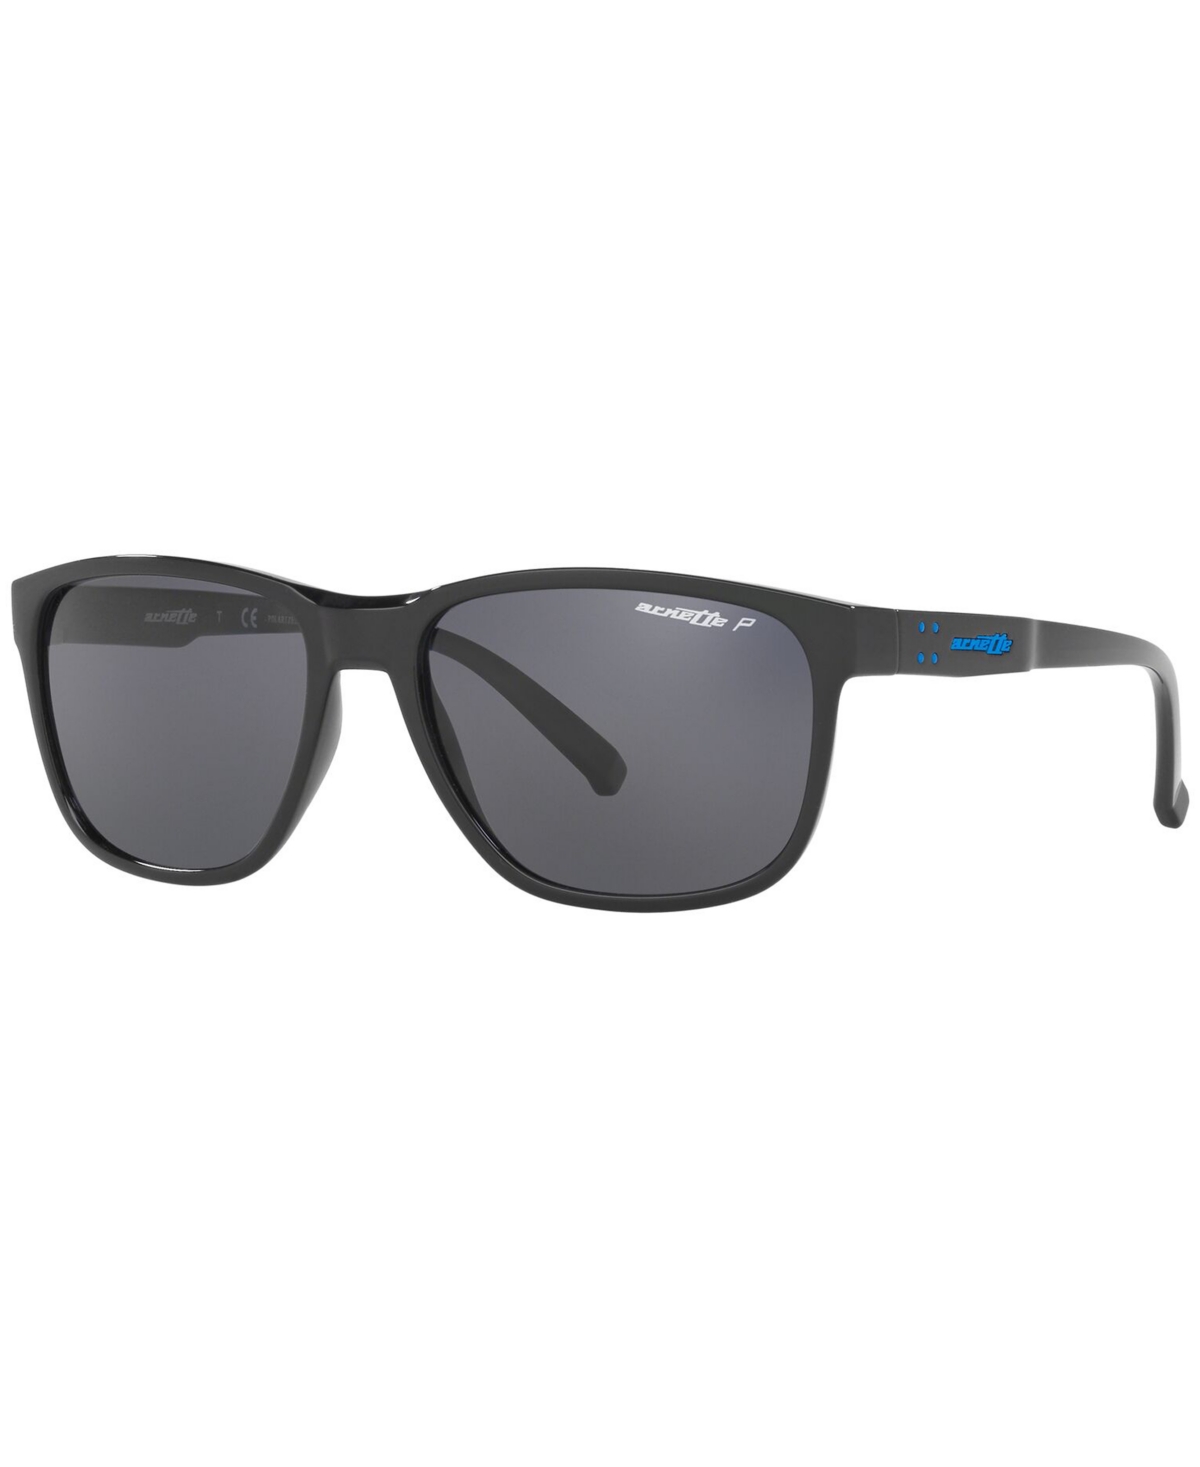 Polarized Sunglasses, AN4257 57 Urca - BLACK/POLAR GREY